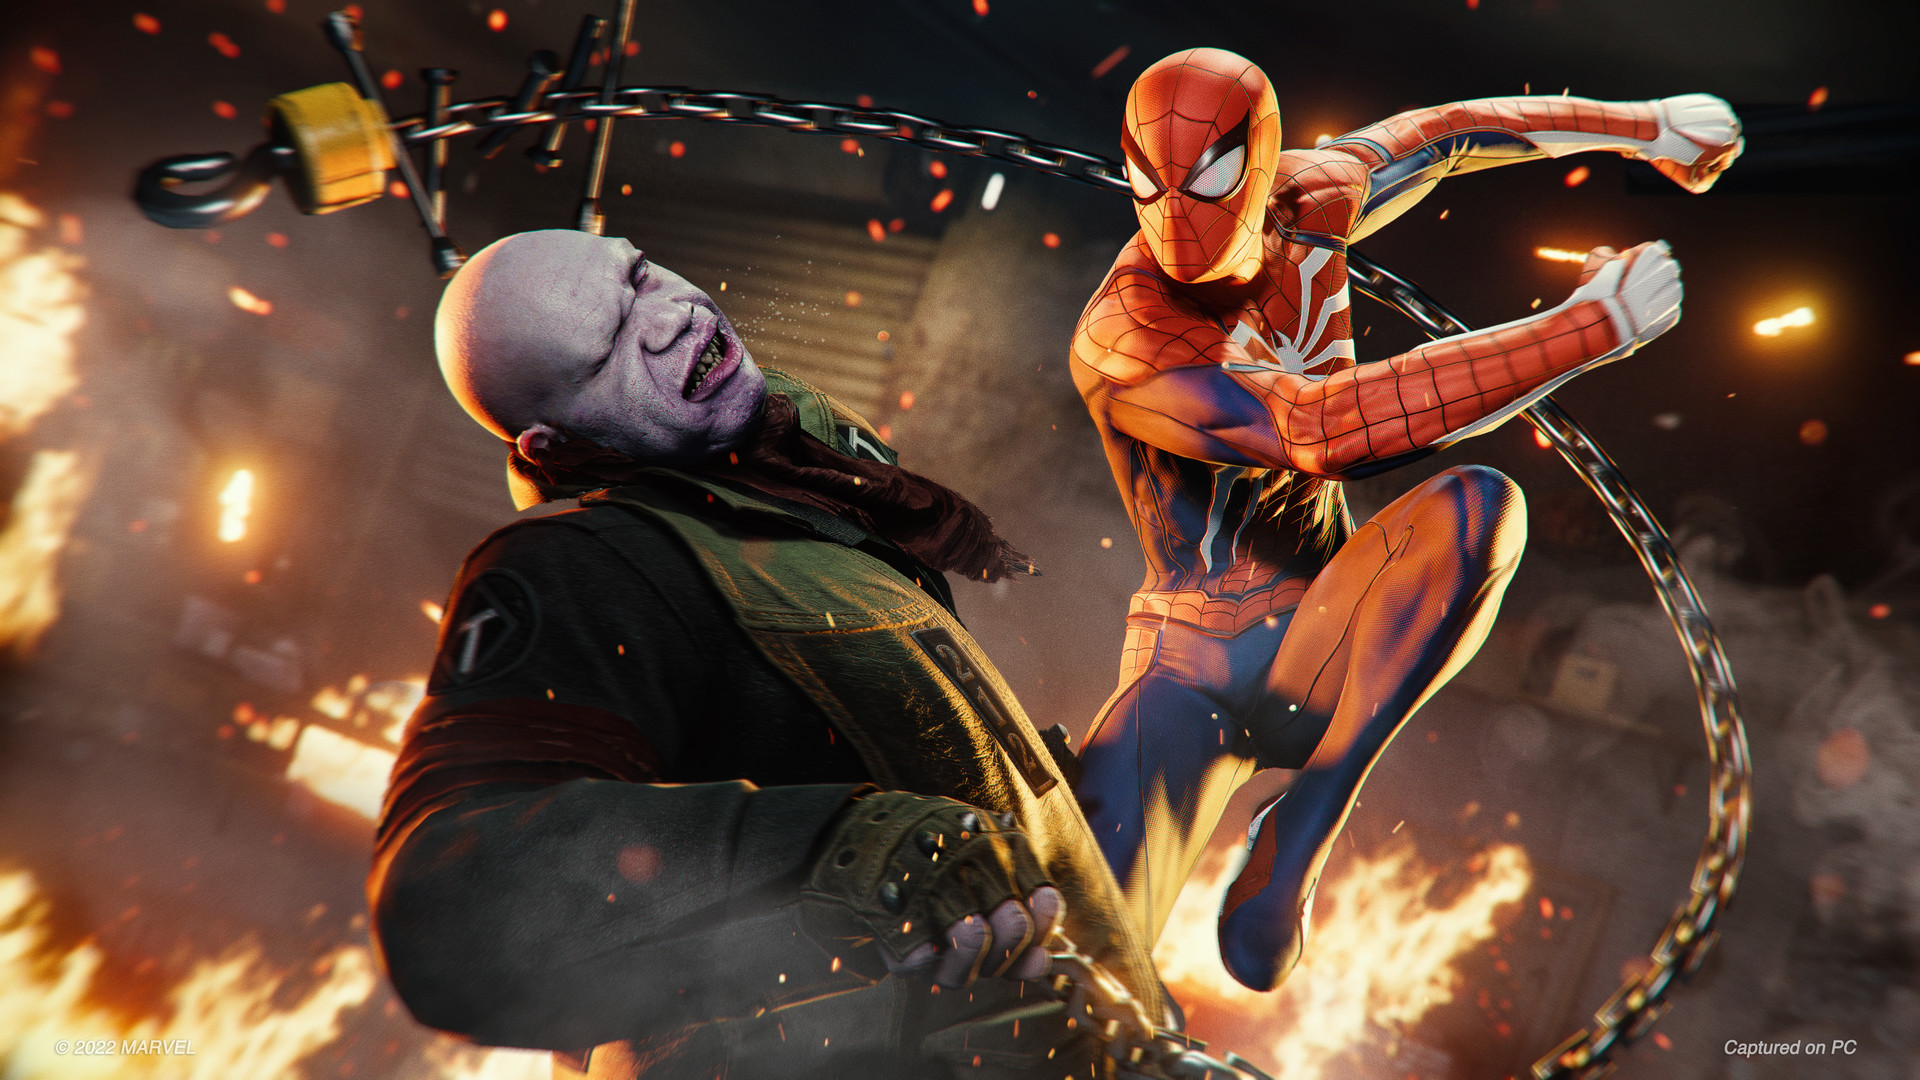 Marvel's Spider-Man 2 foi desenvolvido sem concessões, afirma Sony -  Adrenaline